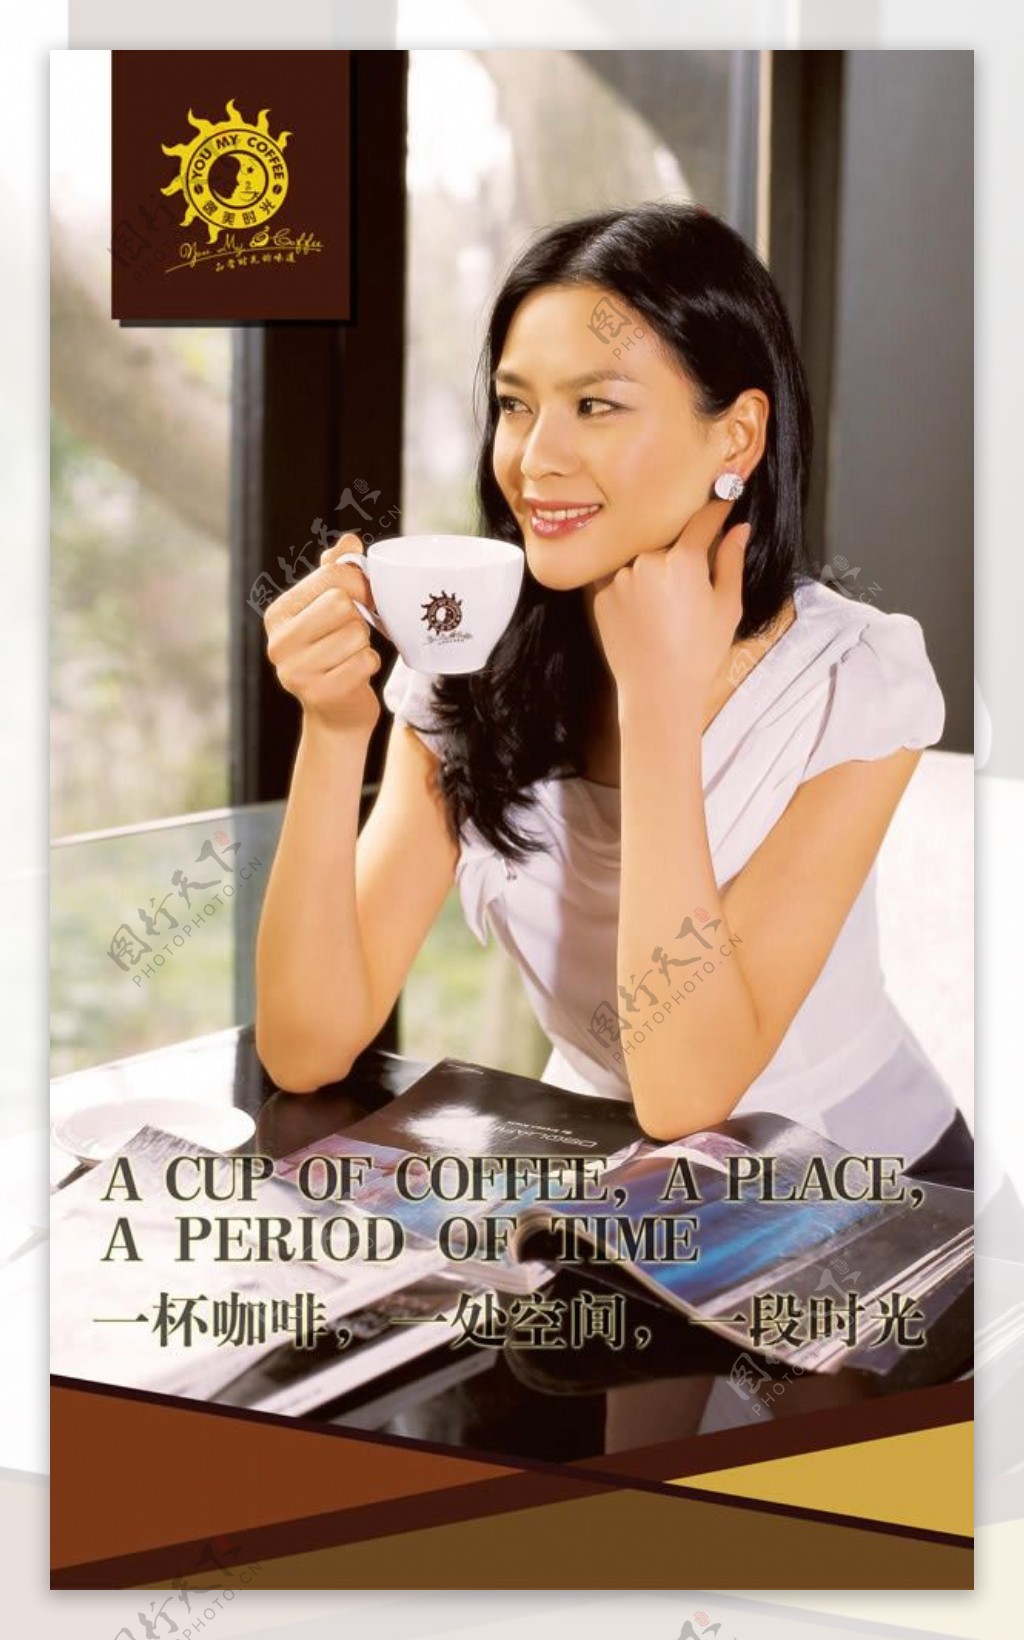 咖啡厅宣传广告海报psd素材